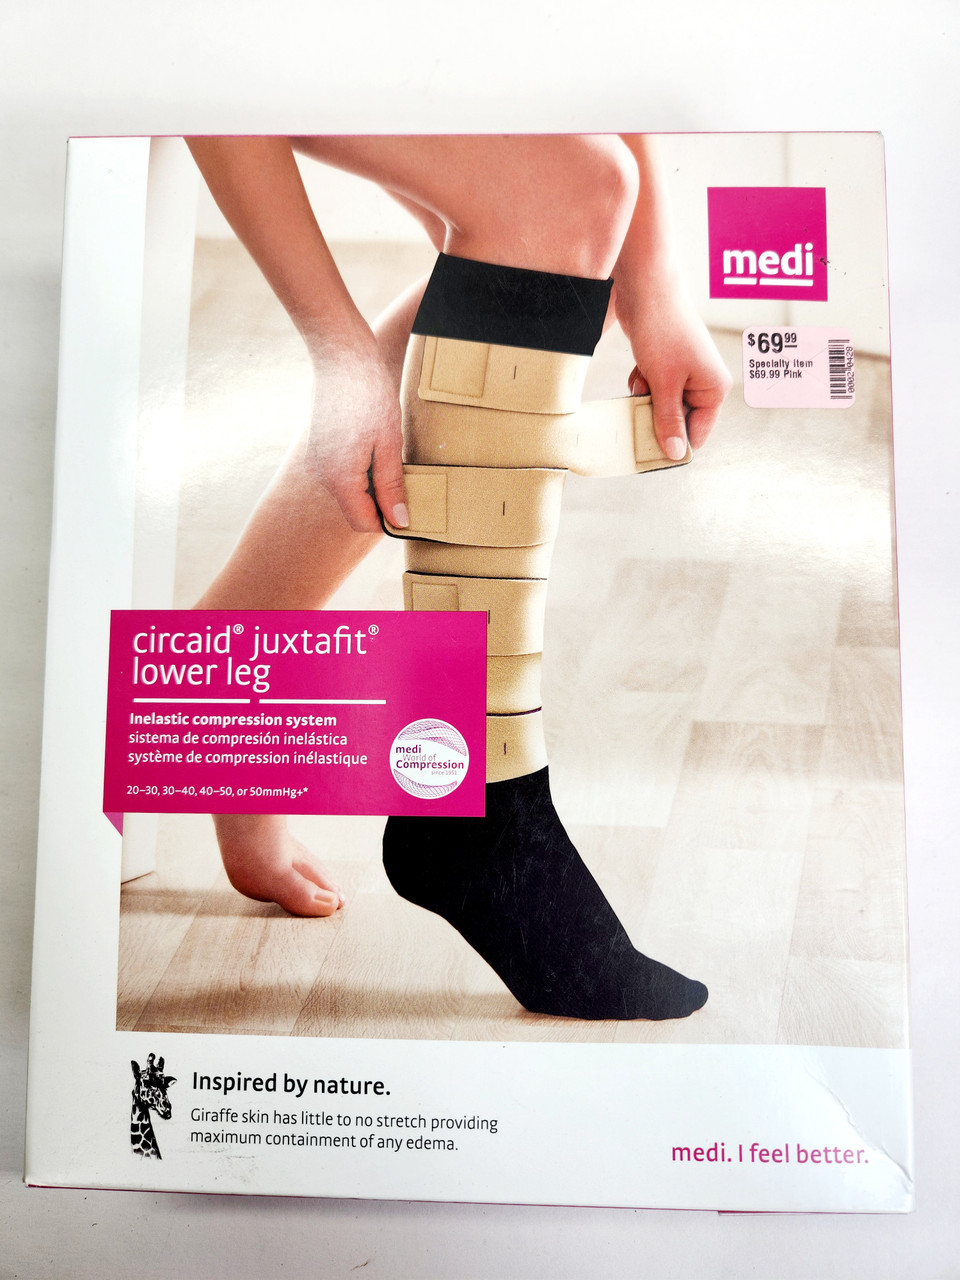 MEDI Circaid Juxtafit Essentials Upper Leg Compression System